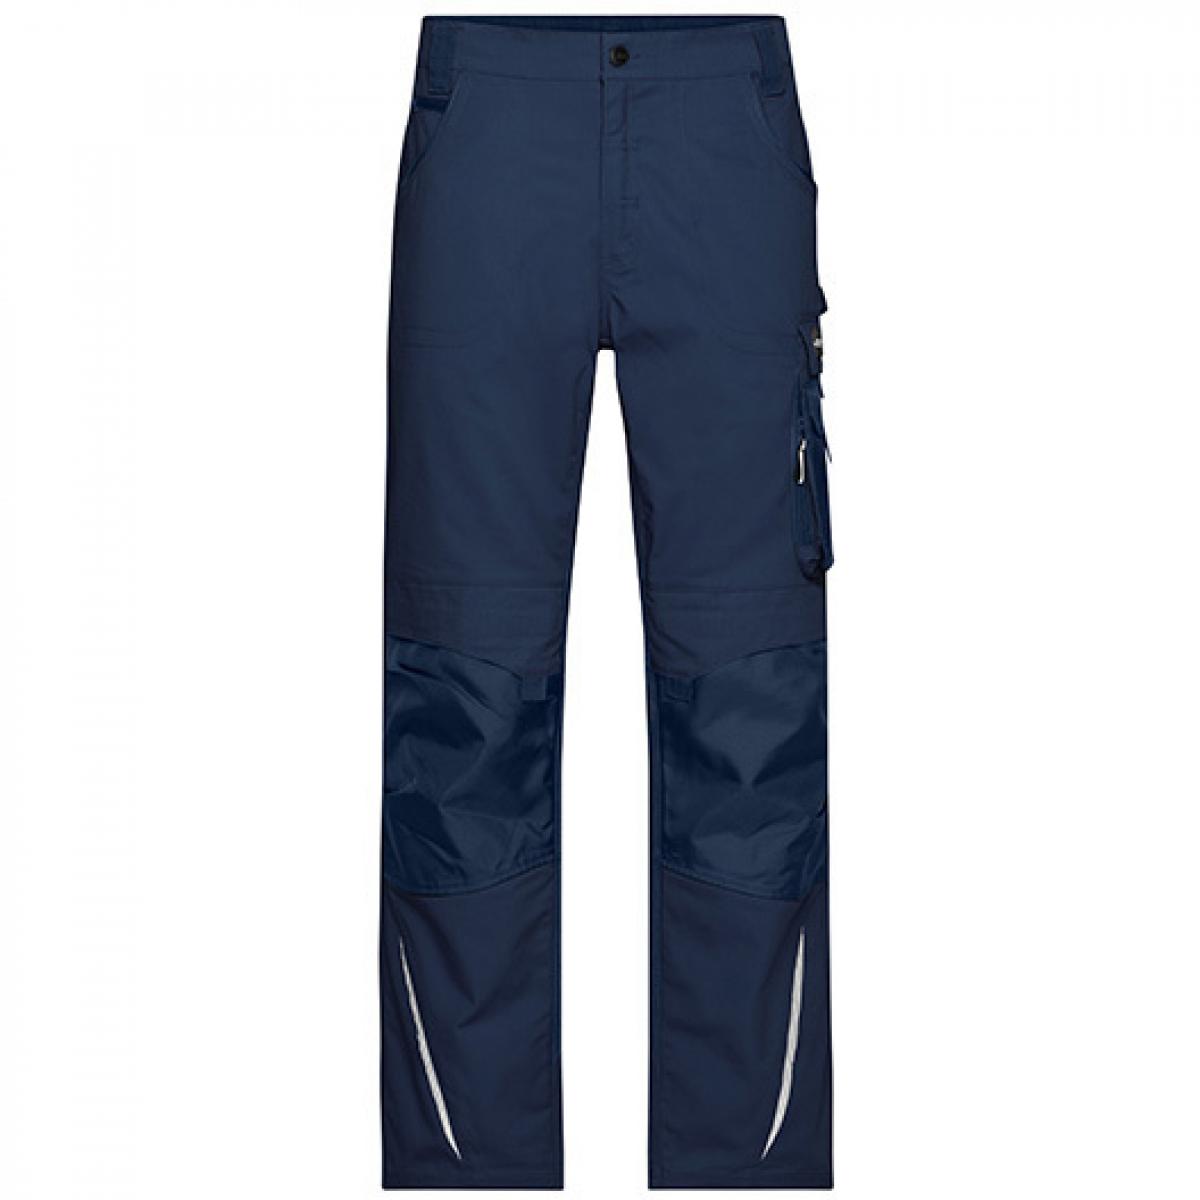 Hersteller: James+Nicholson Herstellernummer: JN832 Artikelbezeichnung: Workwear Pants -STRONG- / Arbeitshose lang Farbe: Navy/Navy